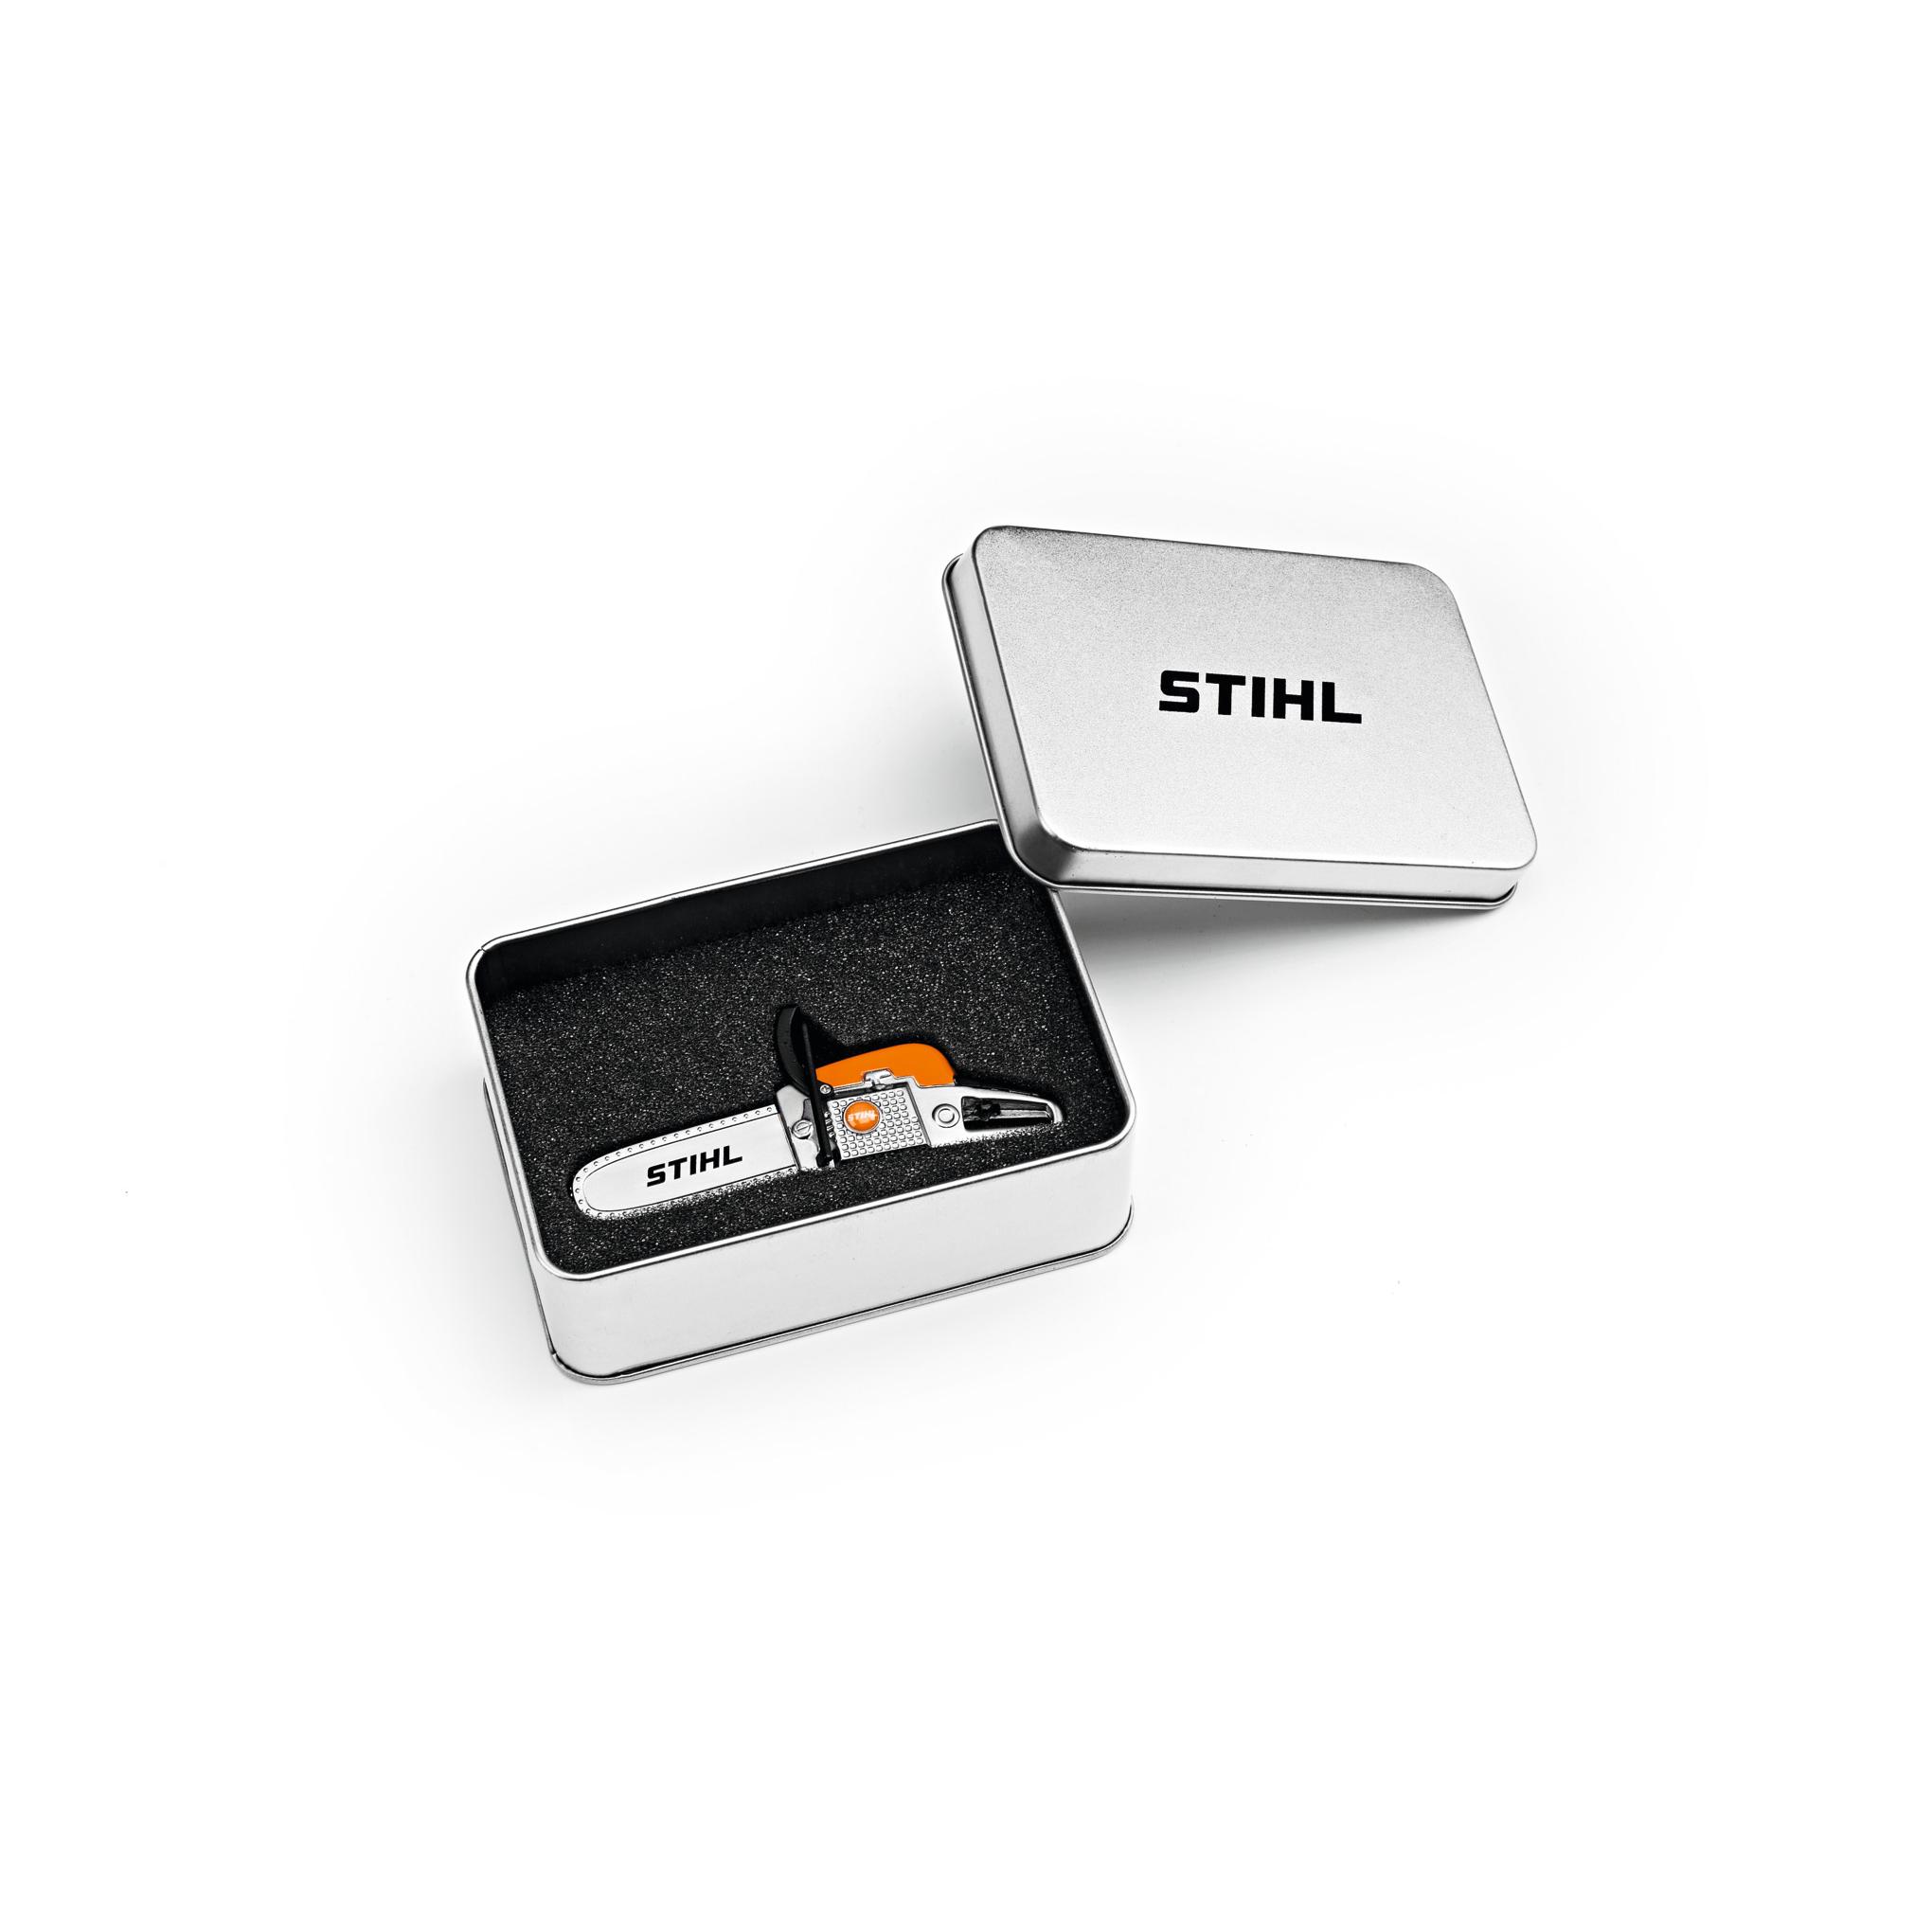 STIHL USB-STICK MOTORZAAG 8 GB